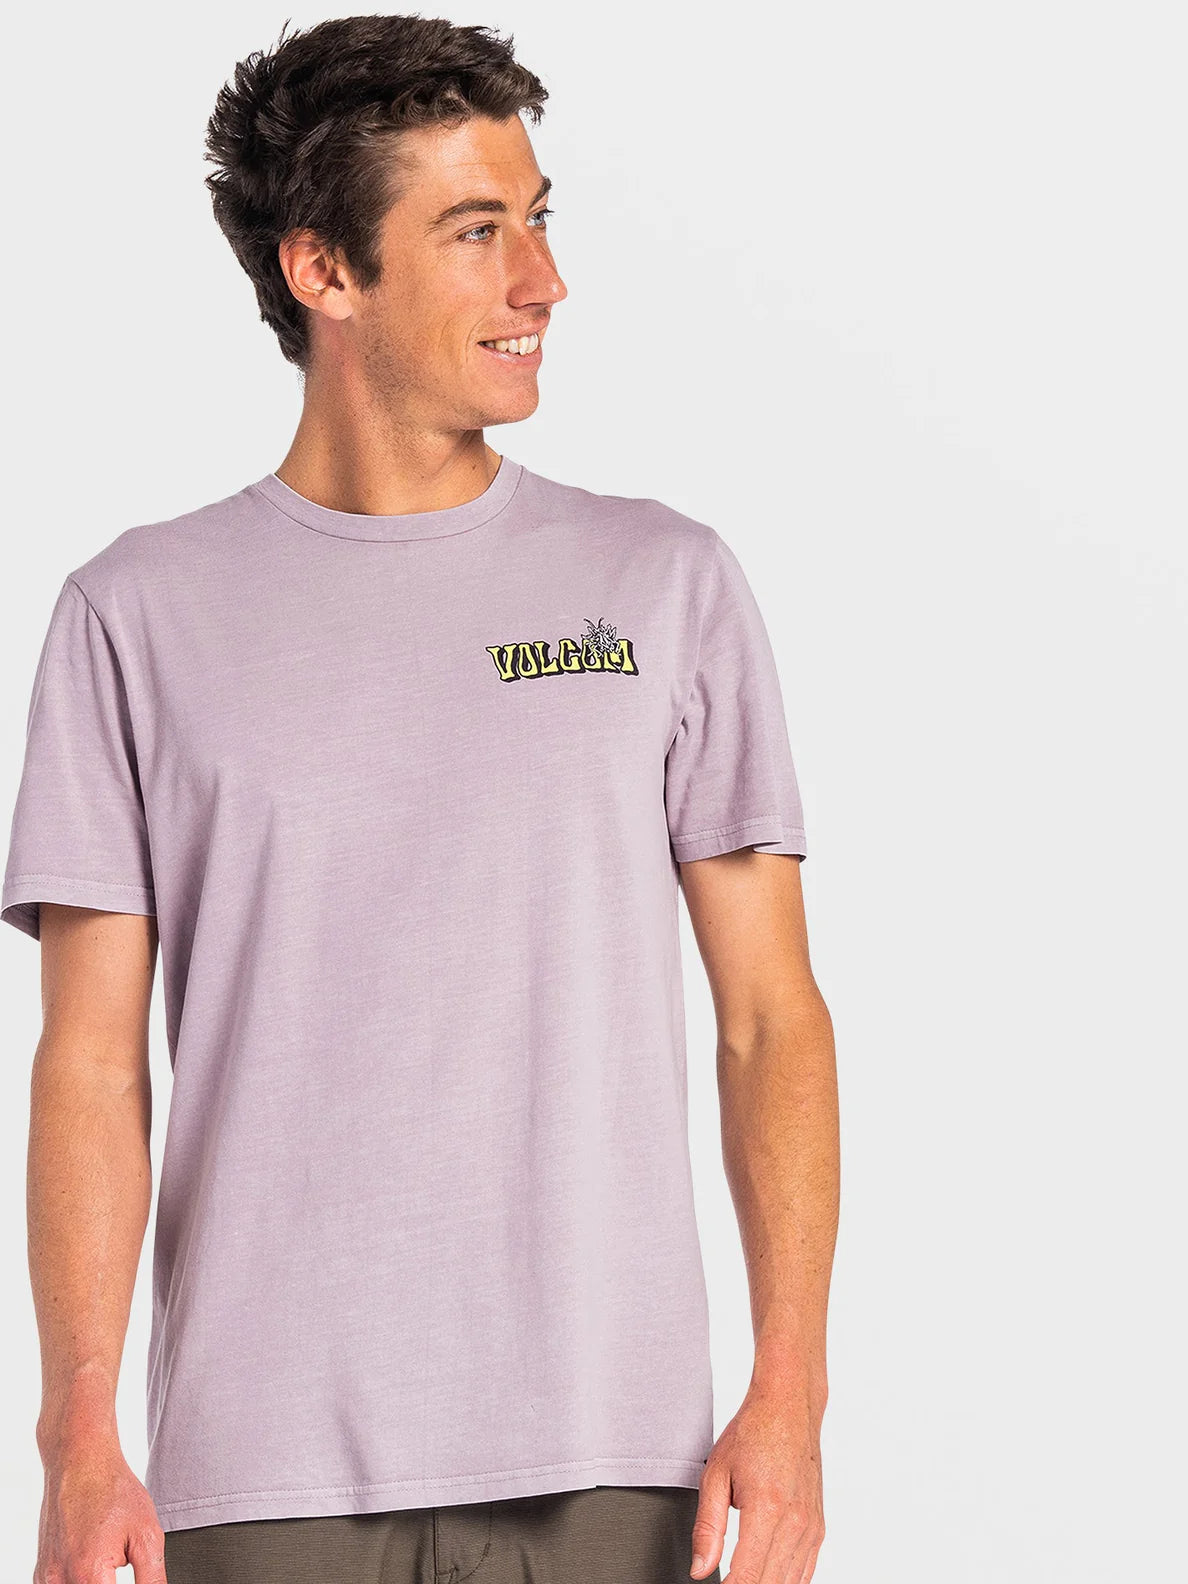 Volcom Blox T-Shirt Niagara | Meistverkaufte Produkte | Neue Produkte | Neueste Produkte | surfdevils.com